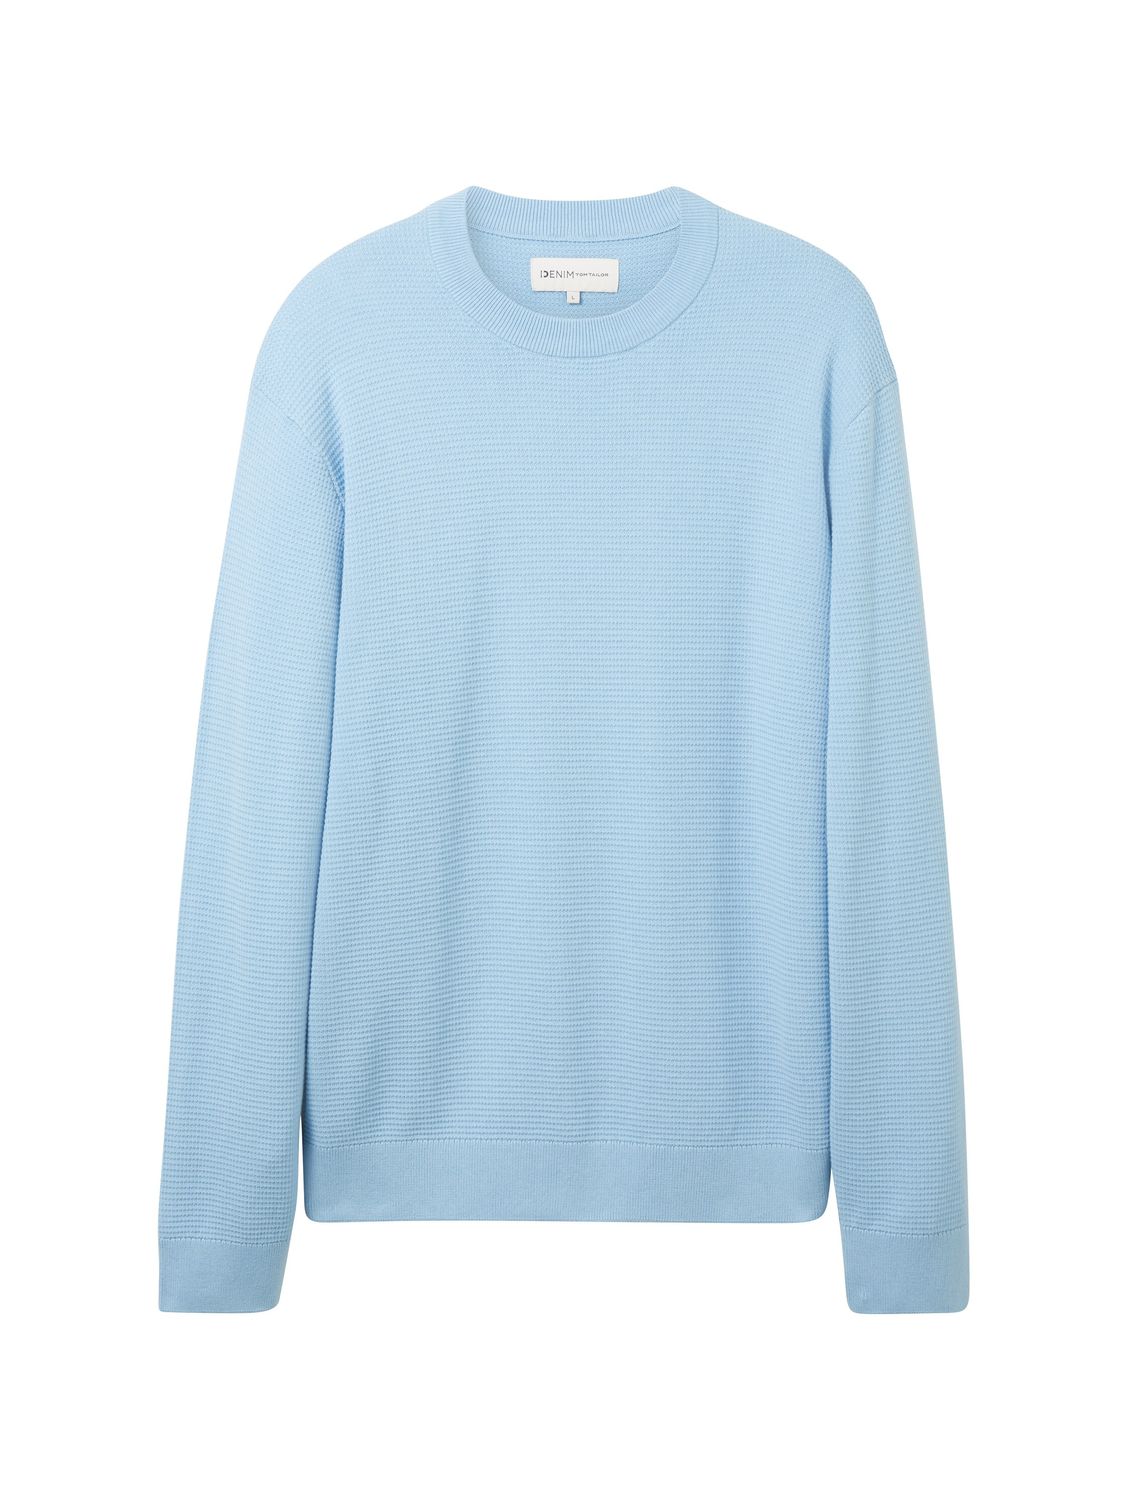 Пуловер TOM TAILOR Denim STRUCTURED BASIC, синий пуловер tom tailor denim structured basic серый